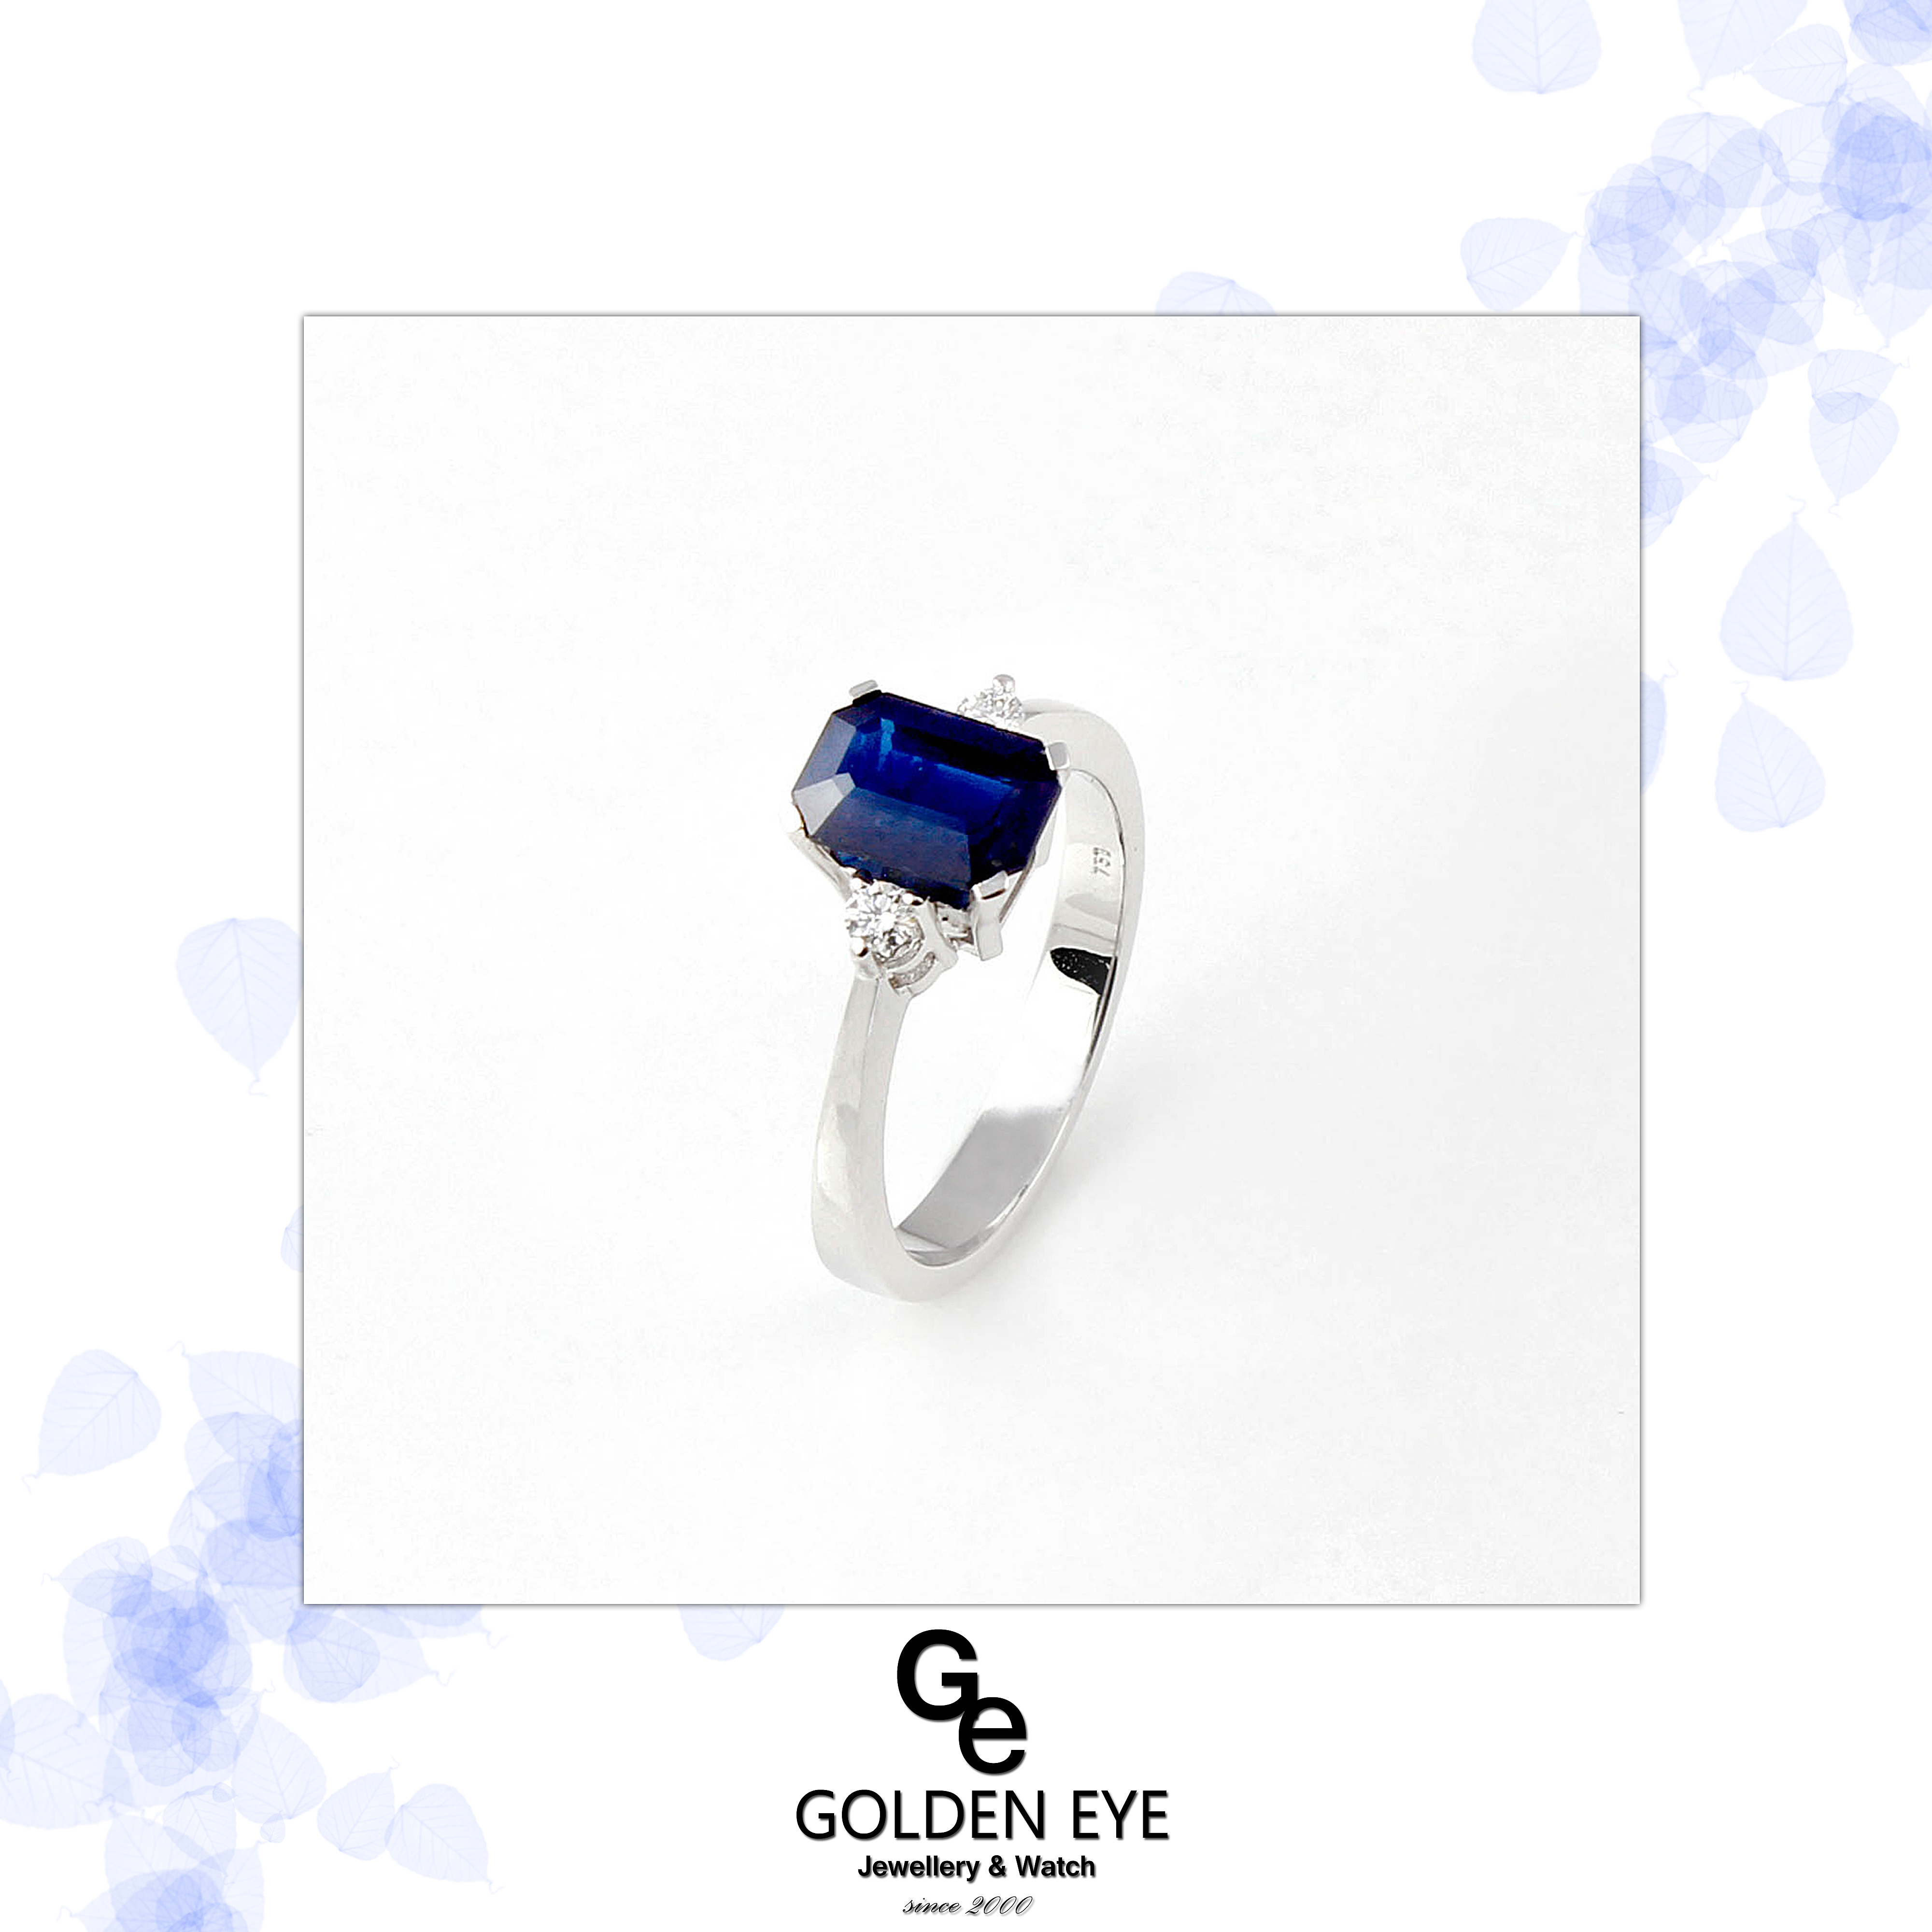 R033E Vitguldsring med Blue Saphire och diamanter